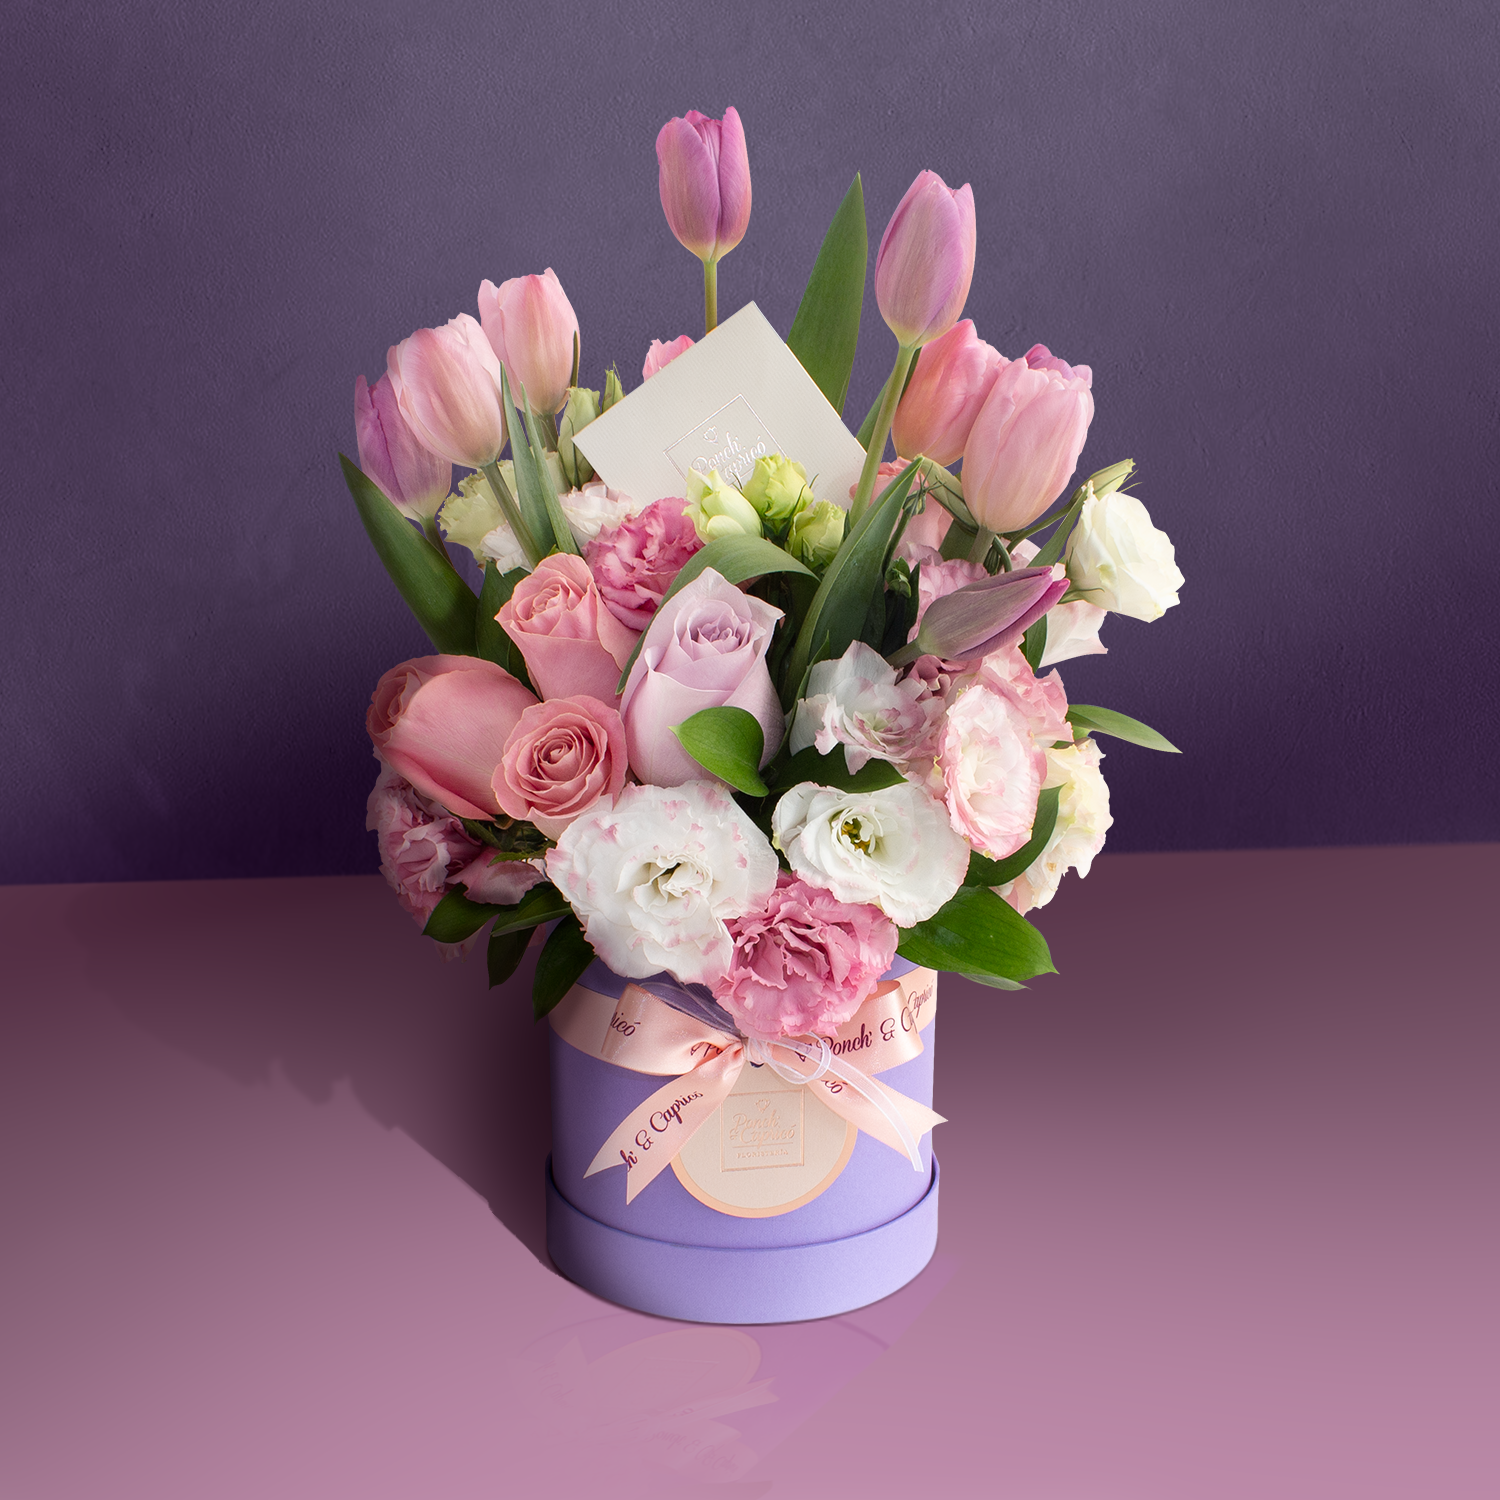 Arreglo floral de tulipanes, rosas (náutica y hermosa) y lisianthus en Caja Rígida + Oso de Peluche + Chocolates + Vino Espumoso Francés - SET086